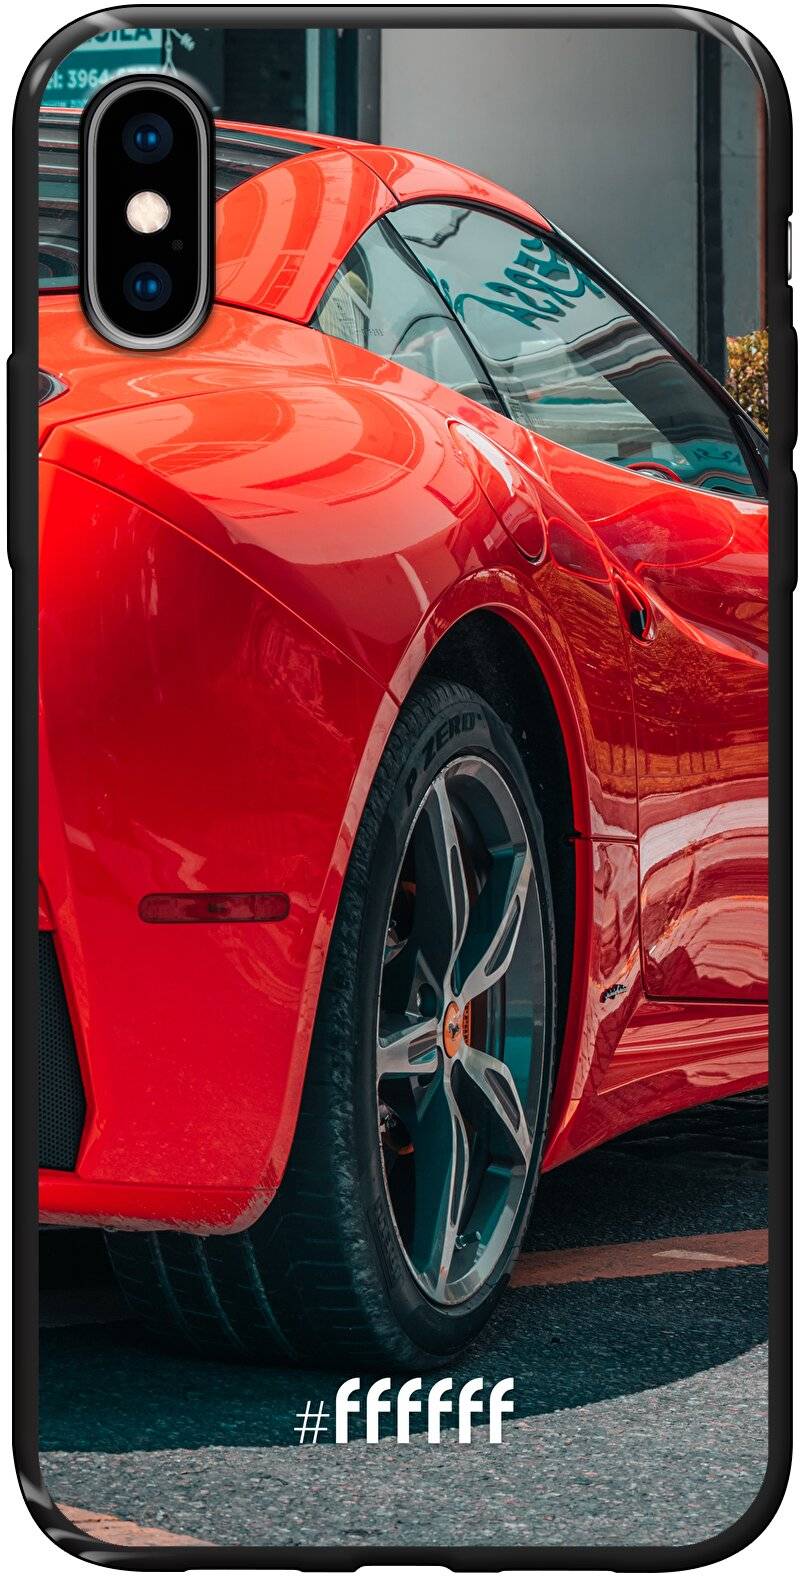 Ferrari iPhone X